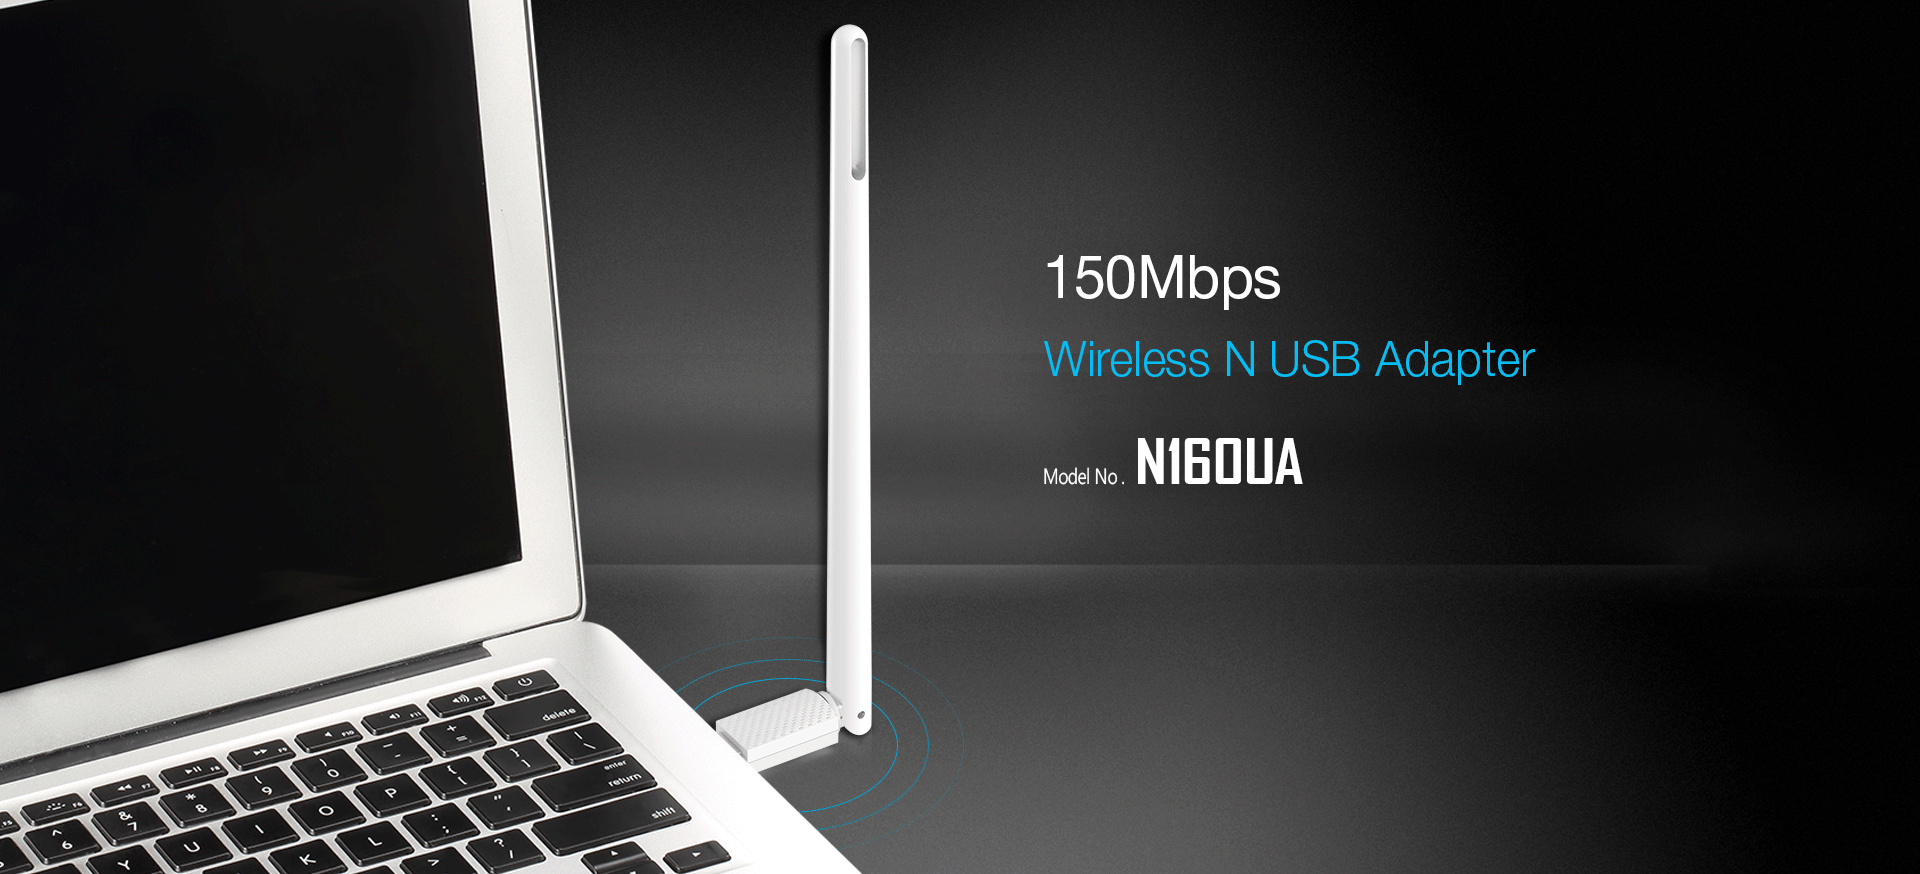  N160UA-150Mbps-Wireless-N-USB-adapter